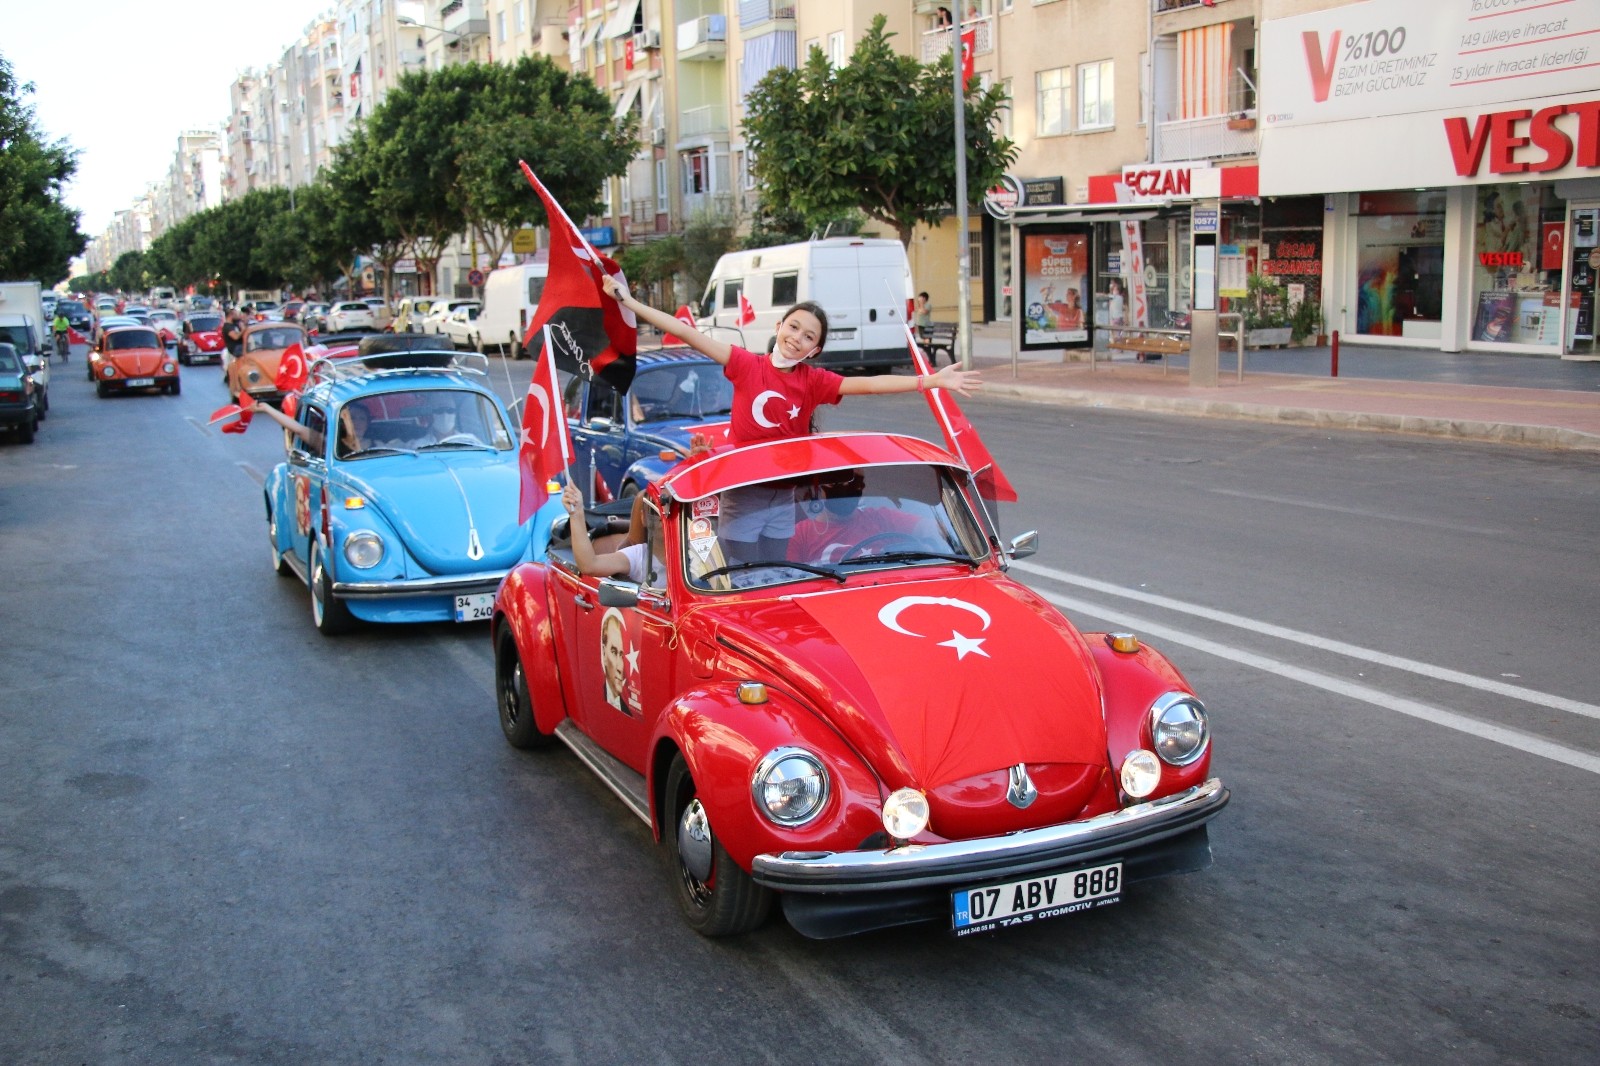 Mobil fener alayı Antalya’yı dolaşacak